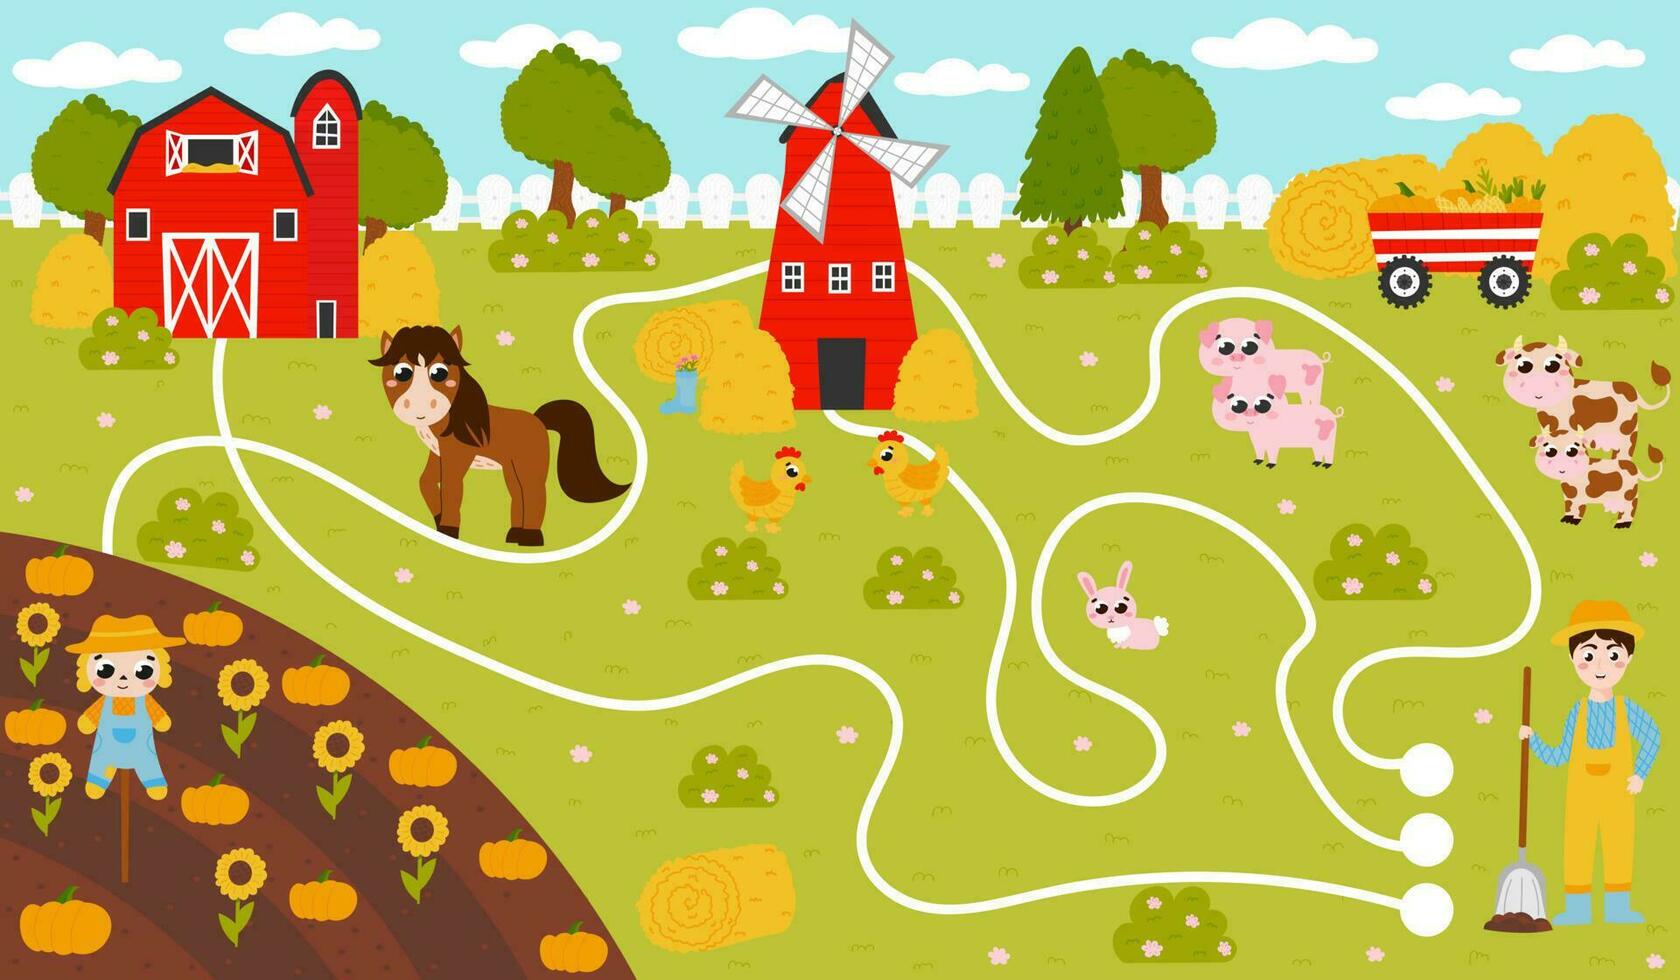 encontrar caminho jogos para crianças com agricultor e cavalo, celeiro e moinho de vento, colheita e animais, imprimível planilha vetor